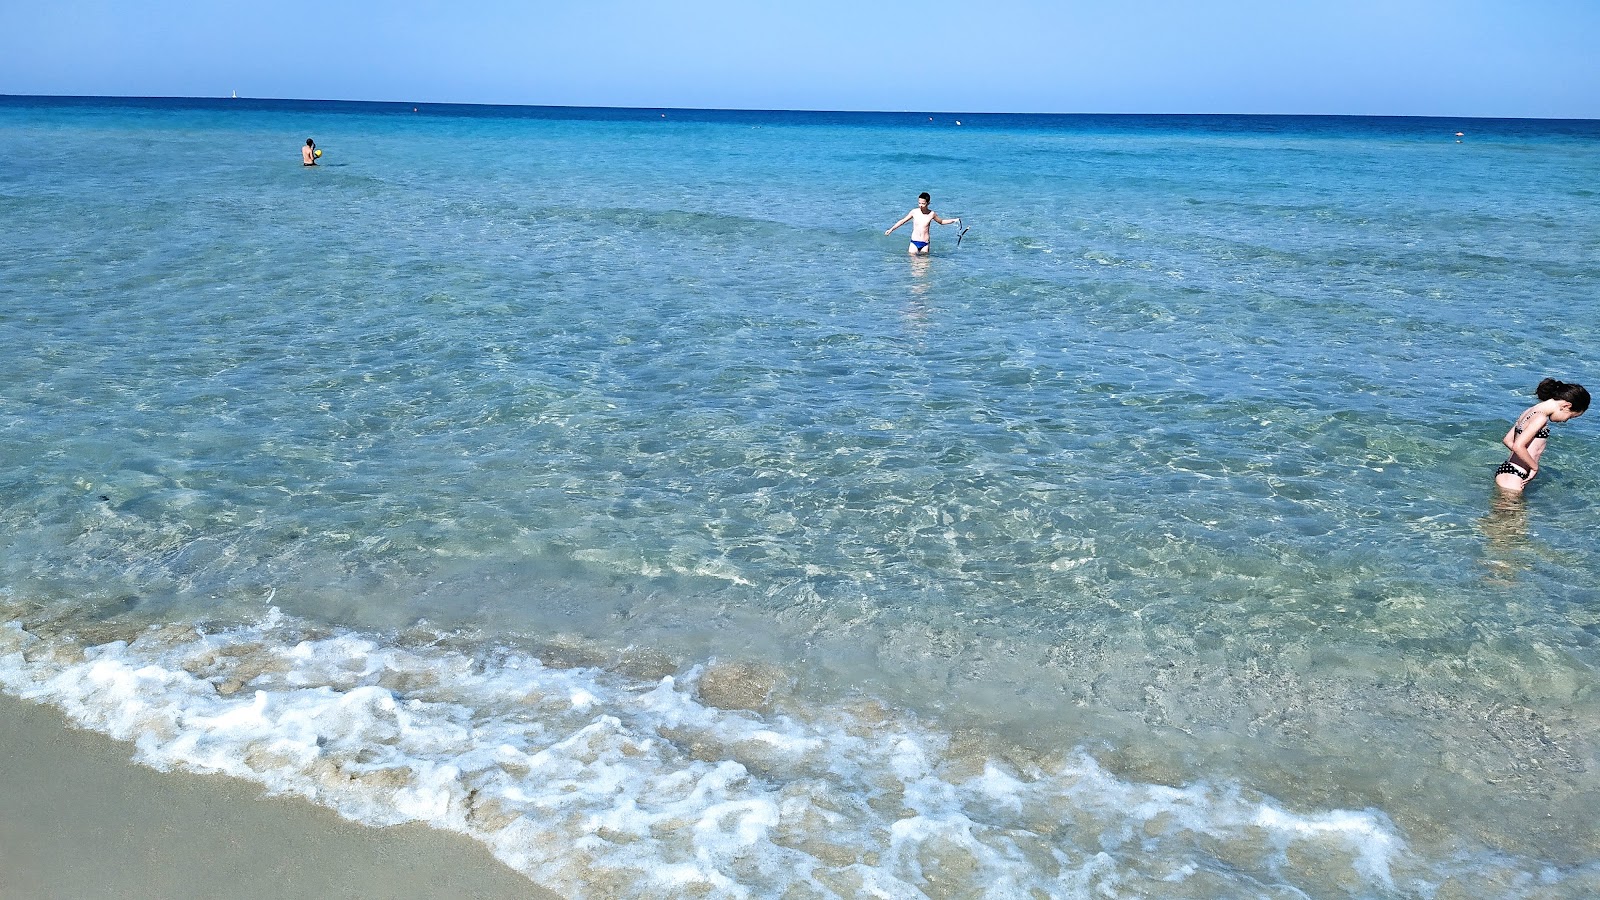 Spiaggia Padula Bianca'in fotoğrafı plaj tatil beldesi alanı